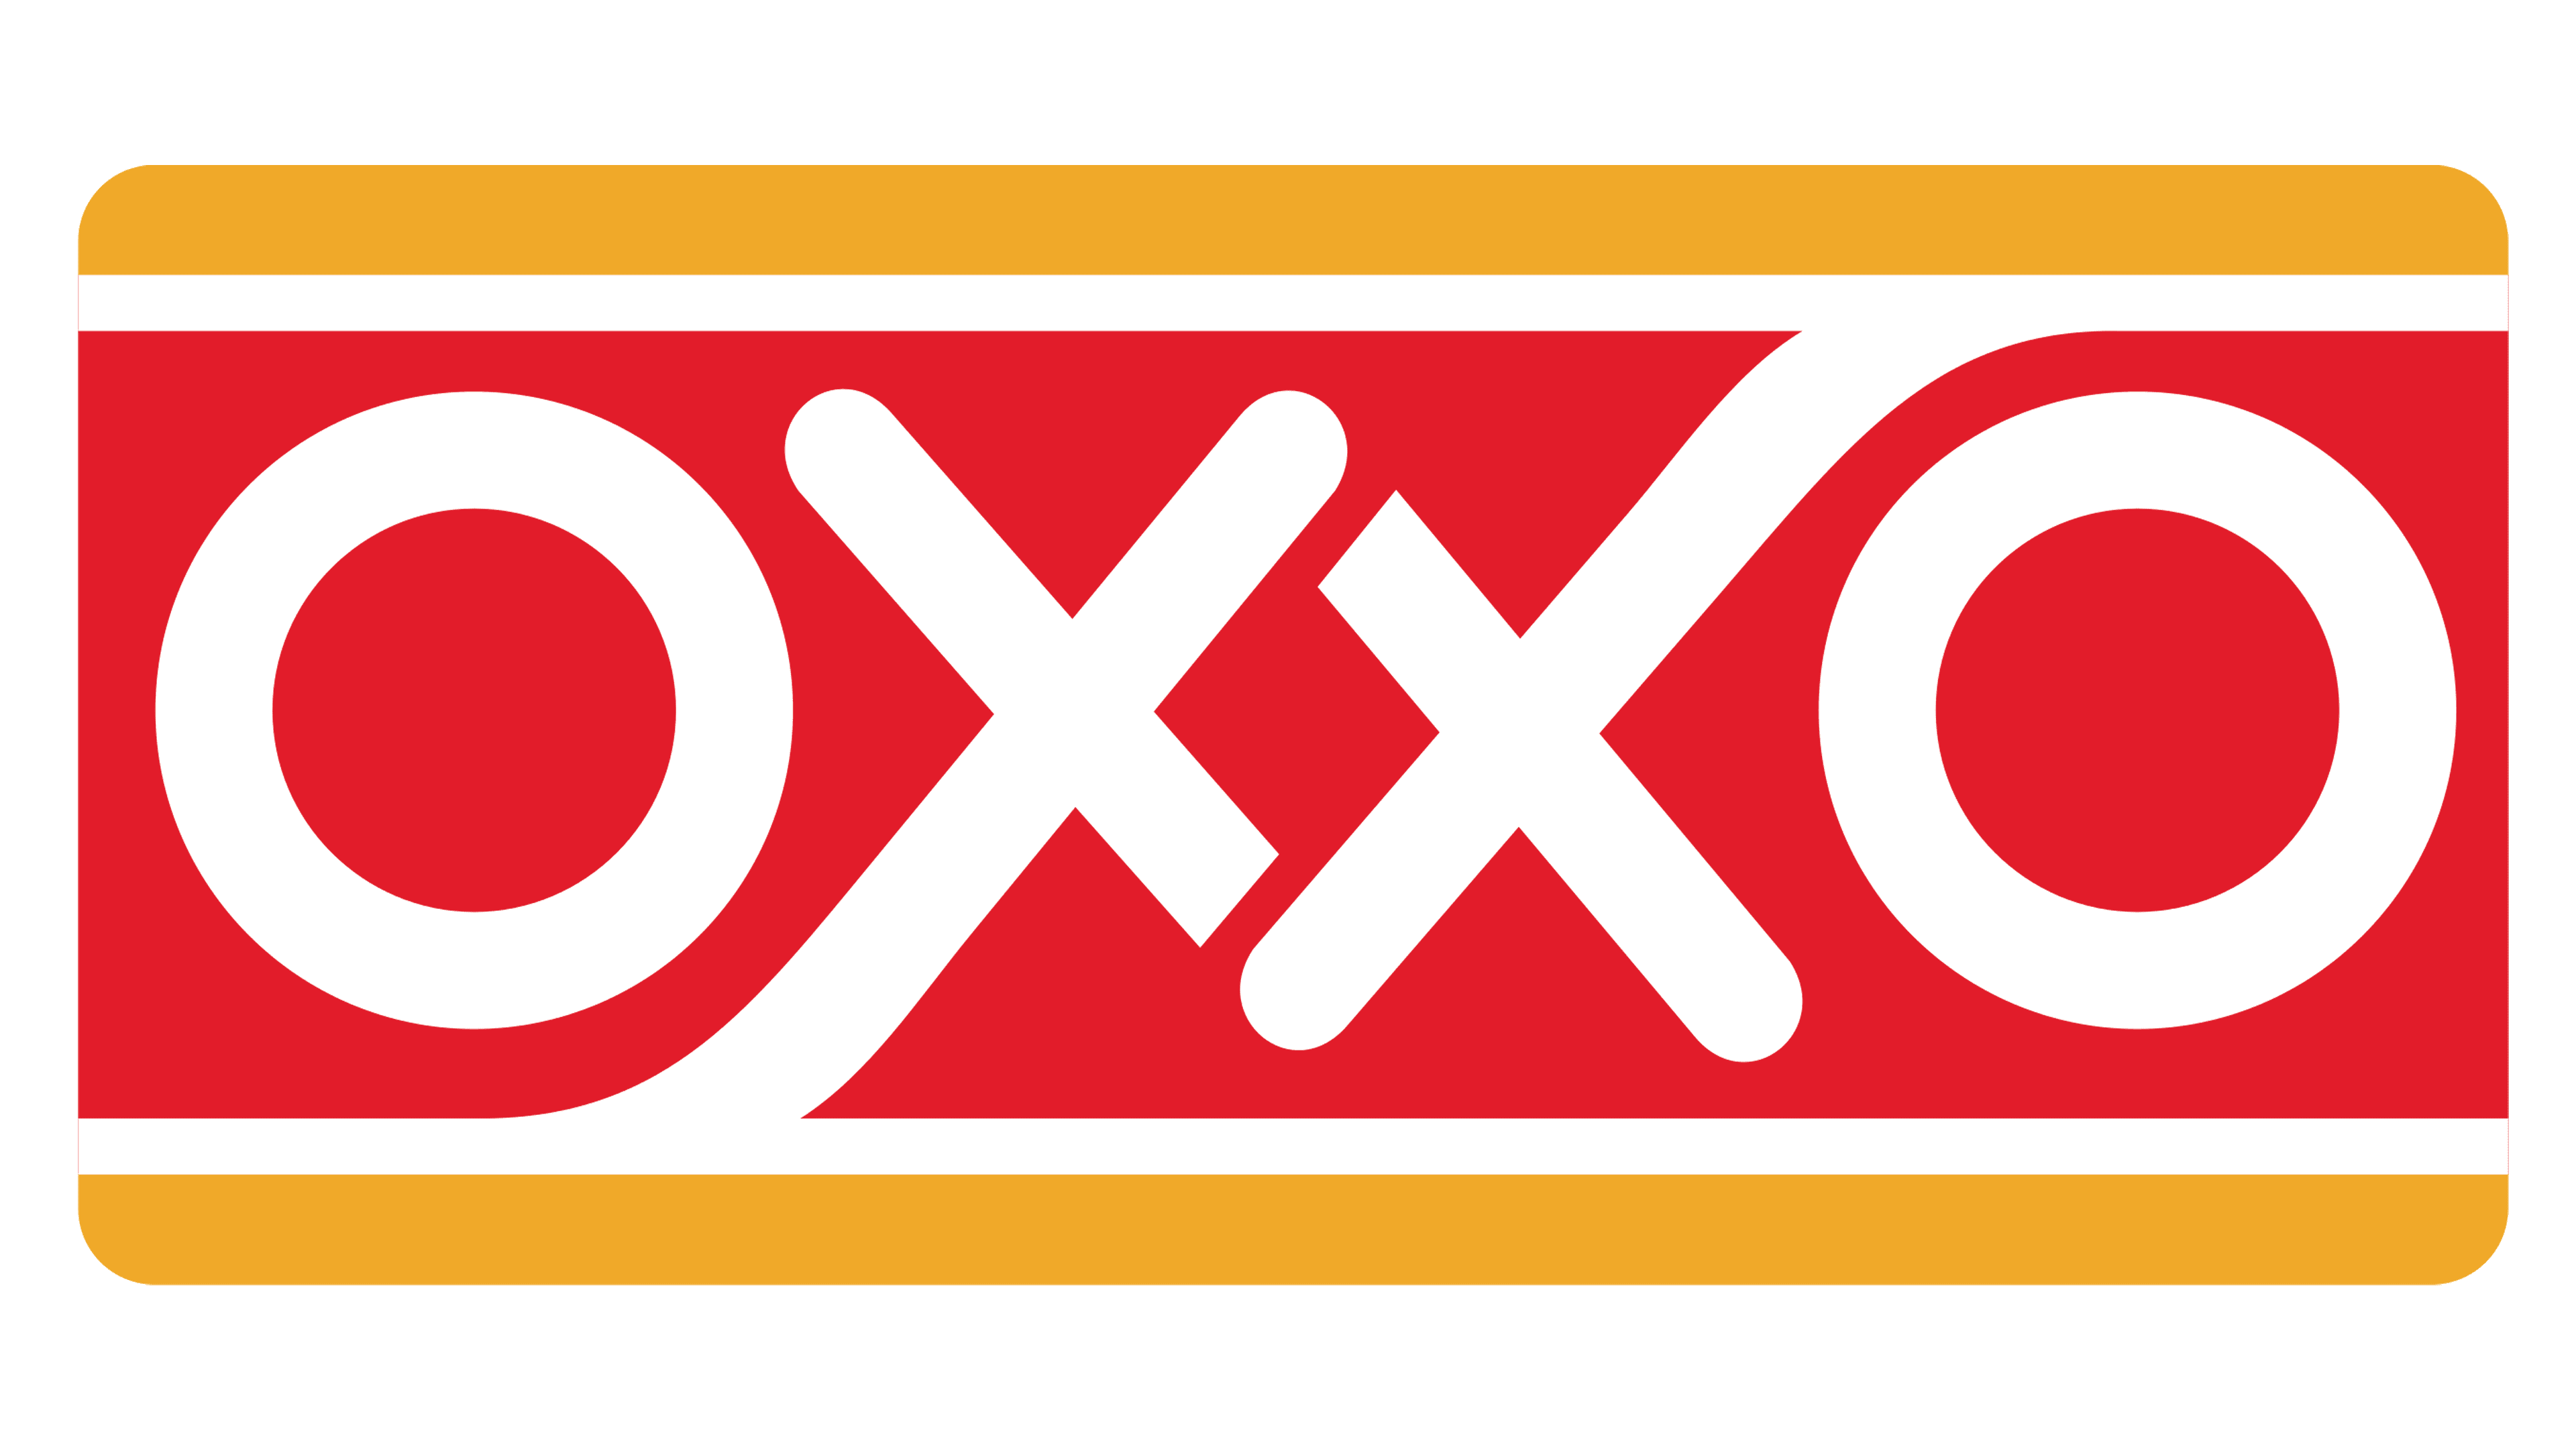 Logo_OXXO